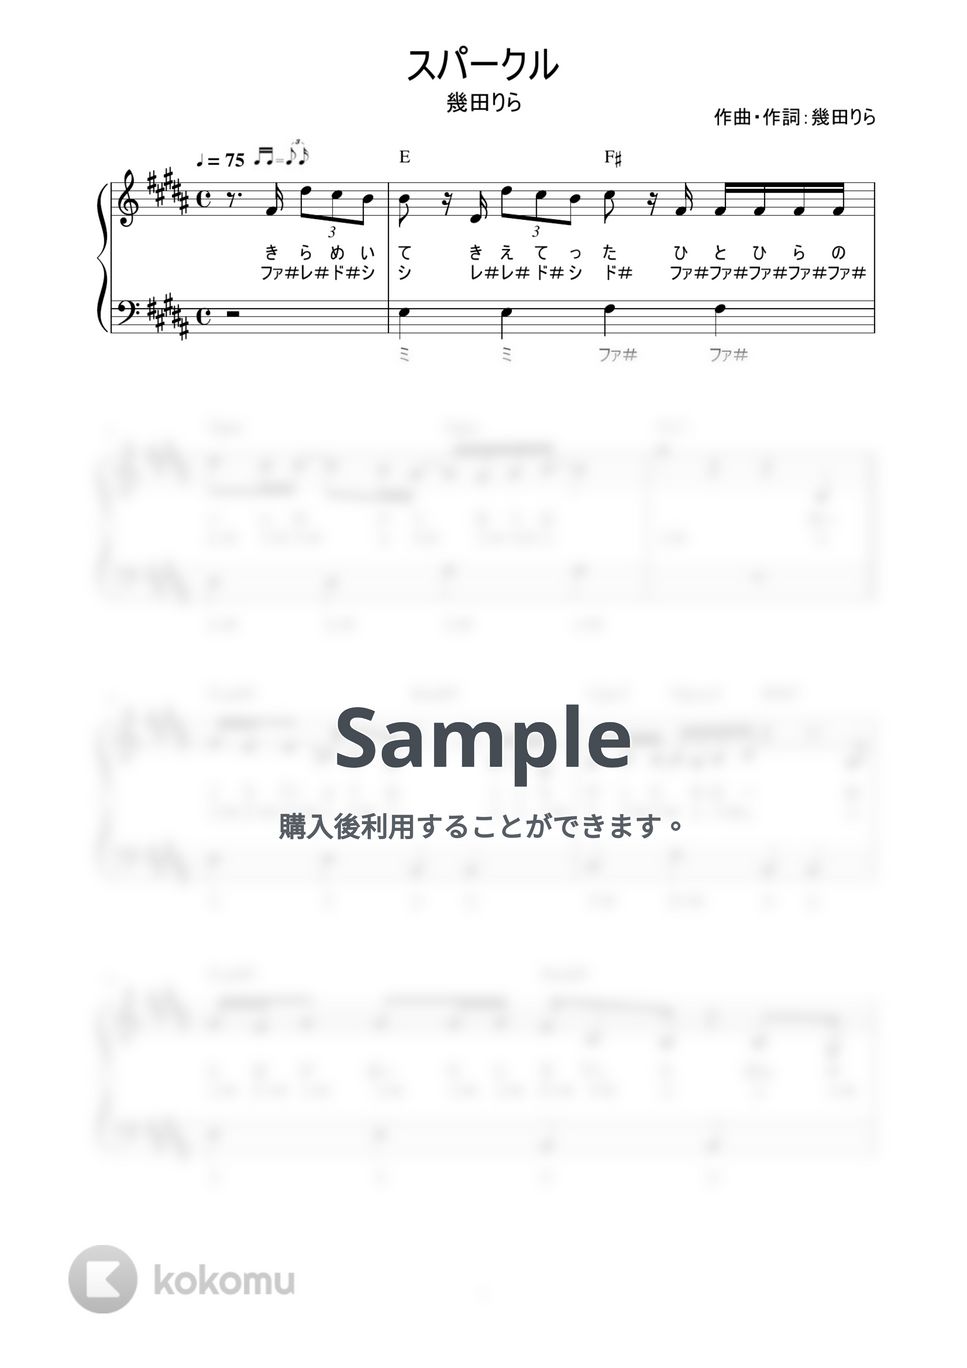 幾田りら - スパークル (かんたん / 歌詞付き / ドレミ付き / 初心者) by piano.tokyo